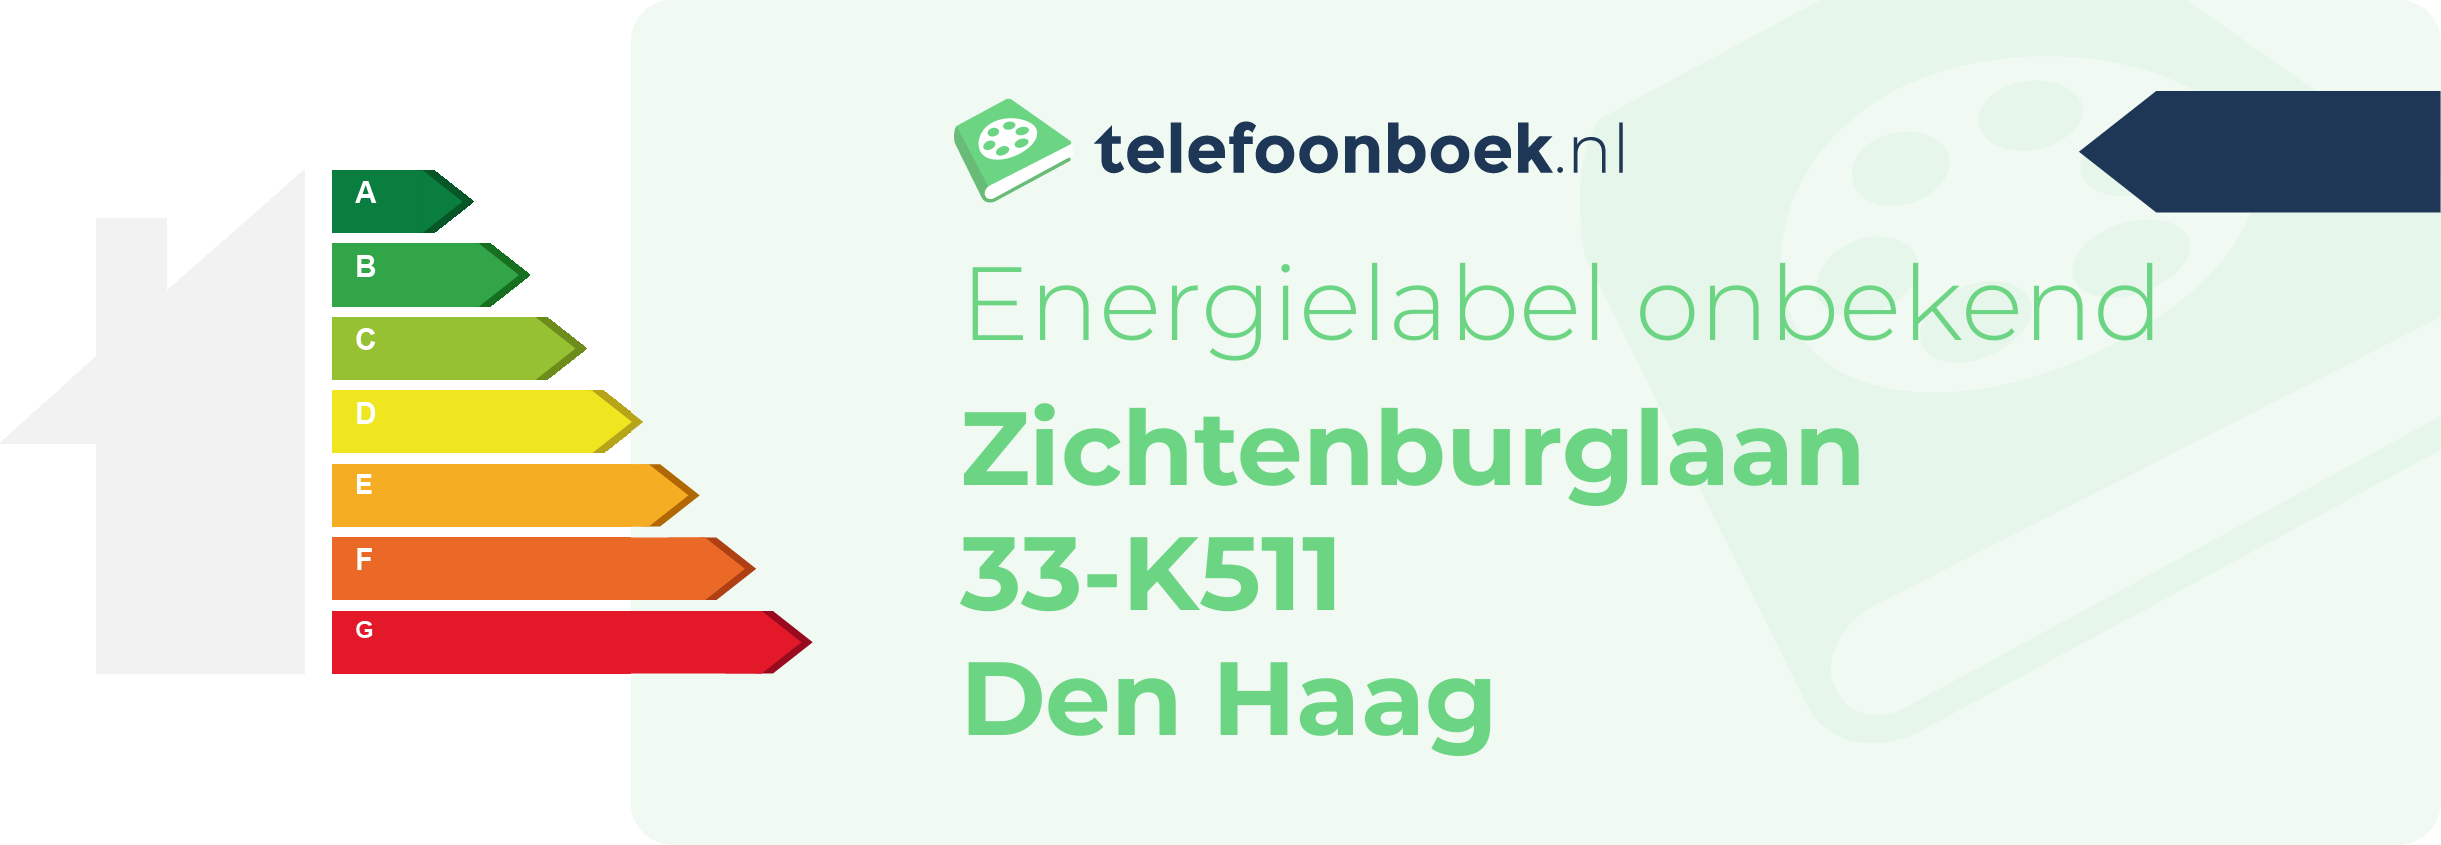 Energielabel Zichtenburglaan 33-K511 Den Haag